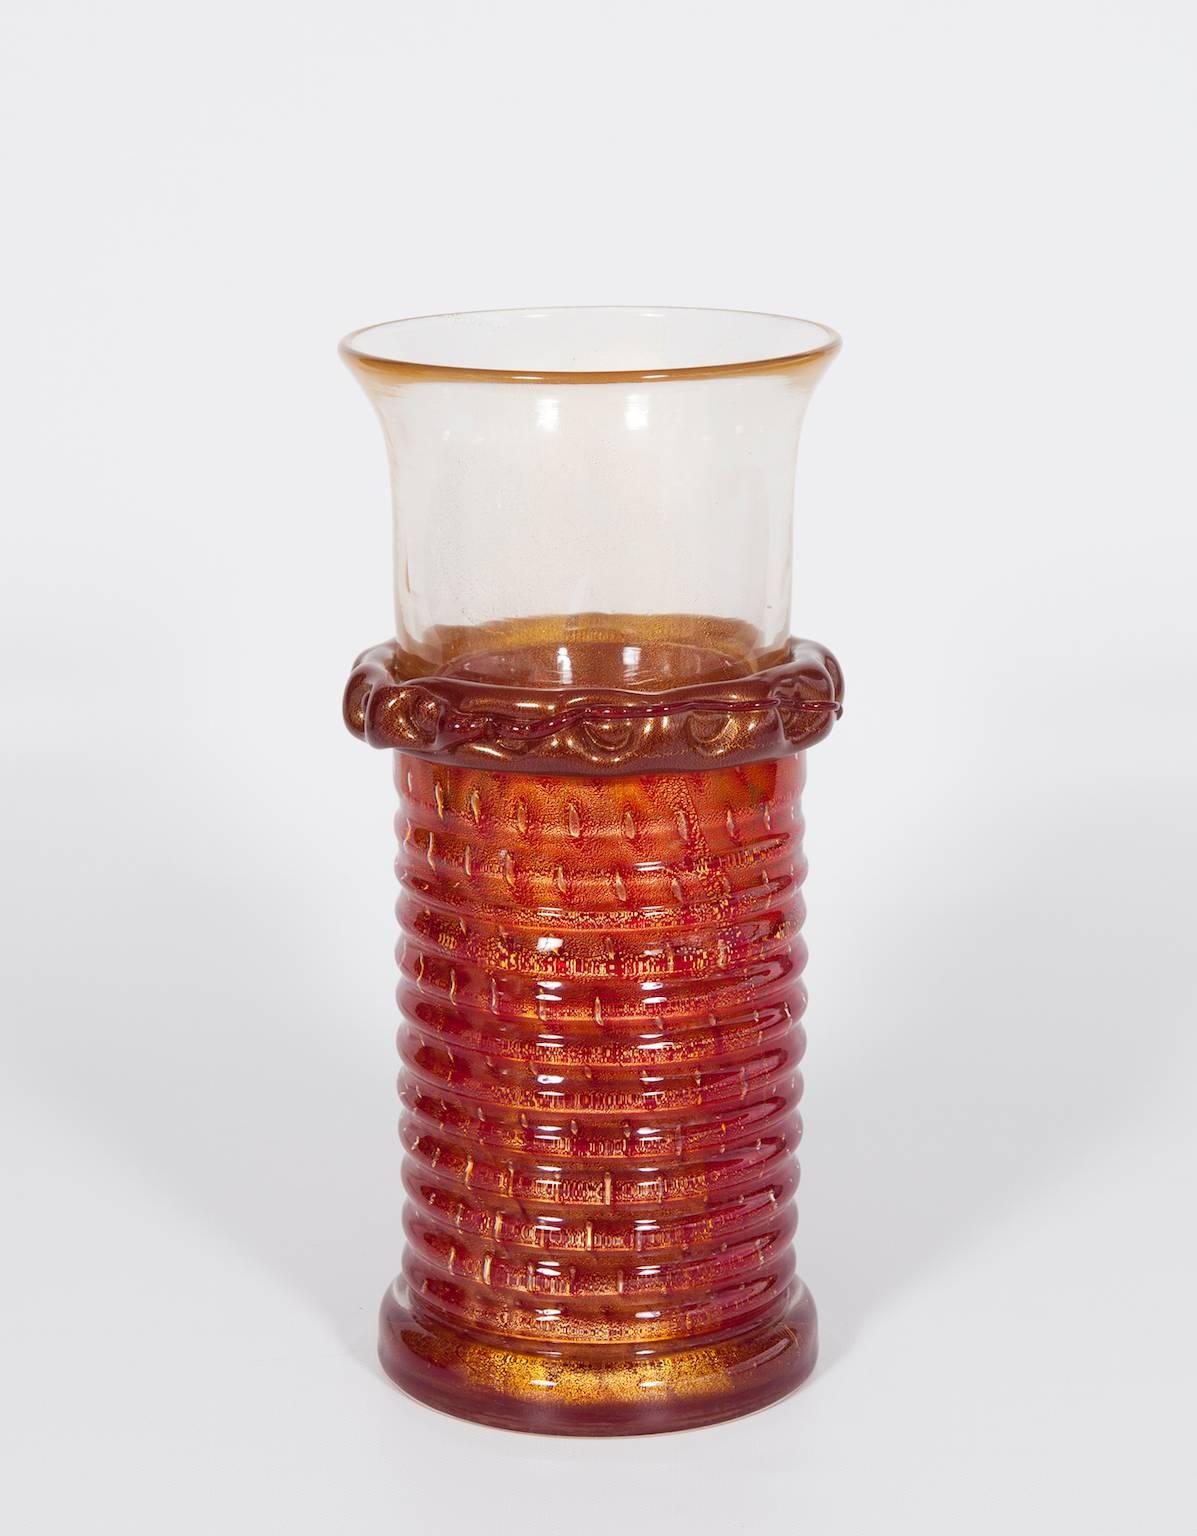 Italienische Vase aus venezianischem Muranoglas, zugeschrieben Barovier & Toso, ca. 1970er Jahre
Erstaunliche und anspruchsvolle italienische venezianischen Murano-Glas-Vase in Gold und rote Farbe mit einem schönen Goldband in der Mitte, die den